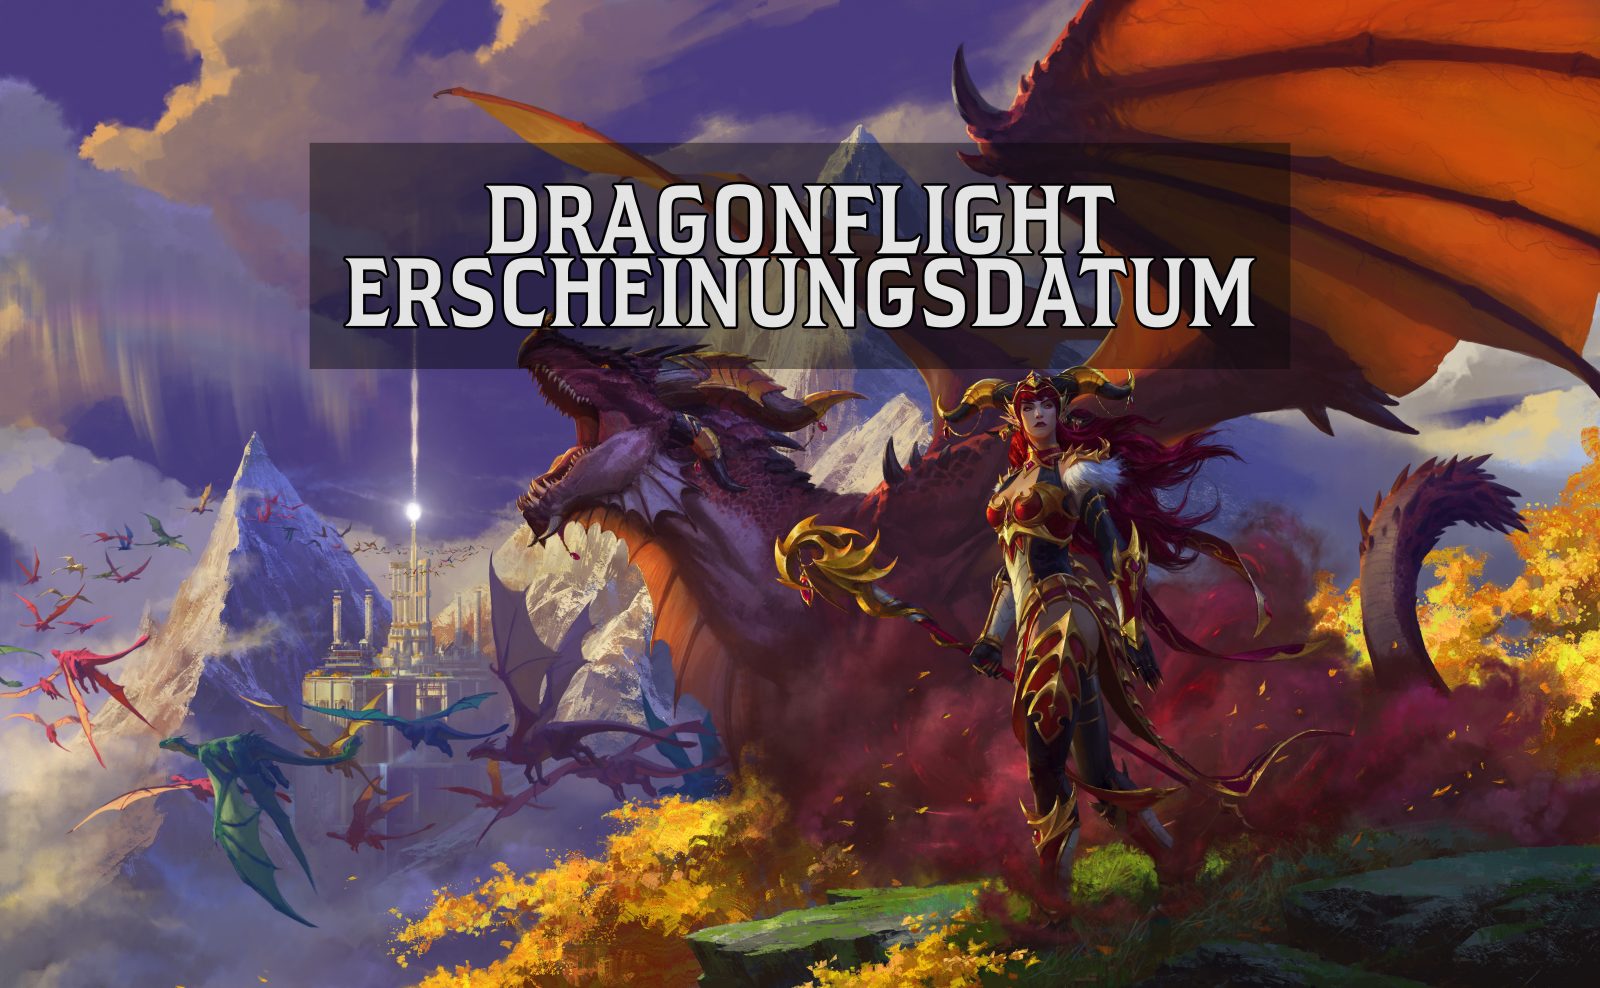 Am 29.11 erscheint die neue World of Warcraft Erweiterung Dragonflight! Wir haben Gewinne